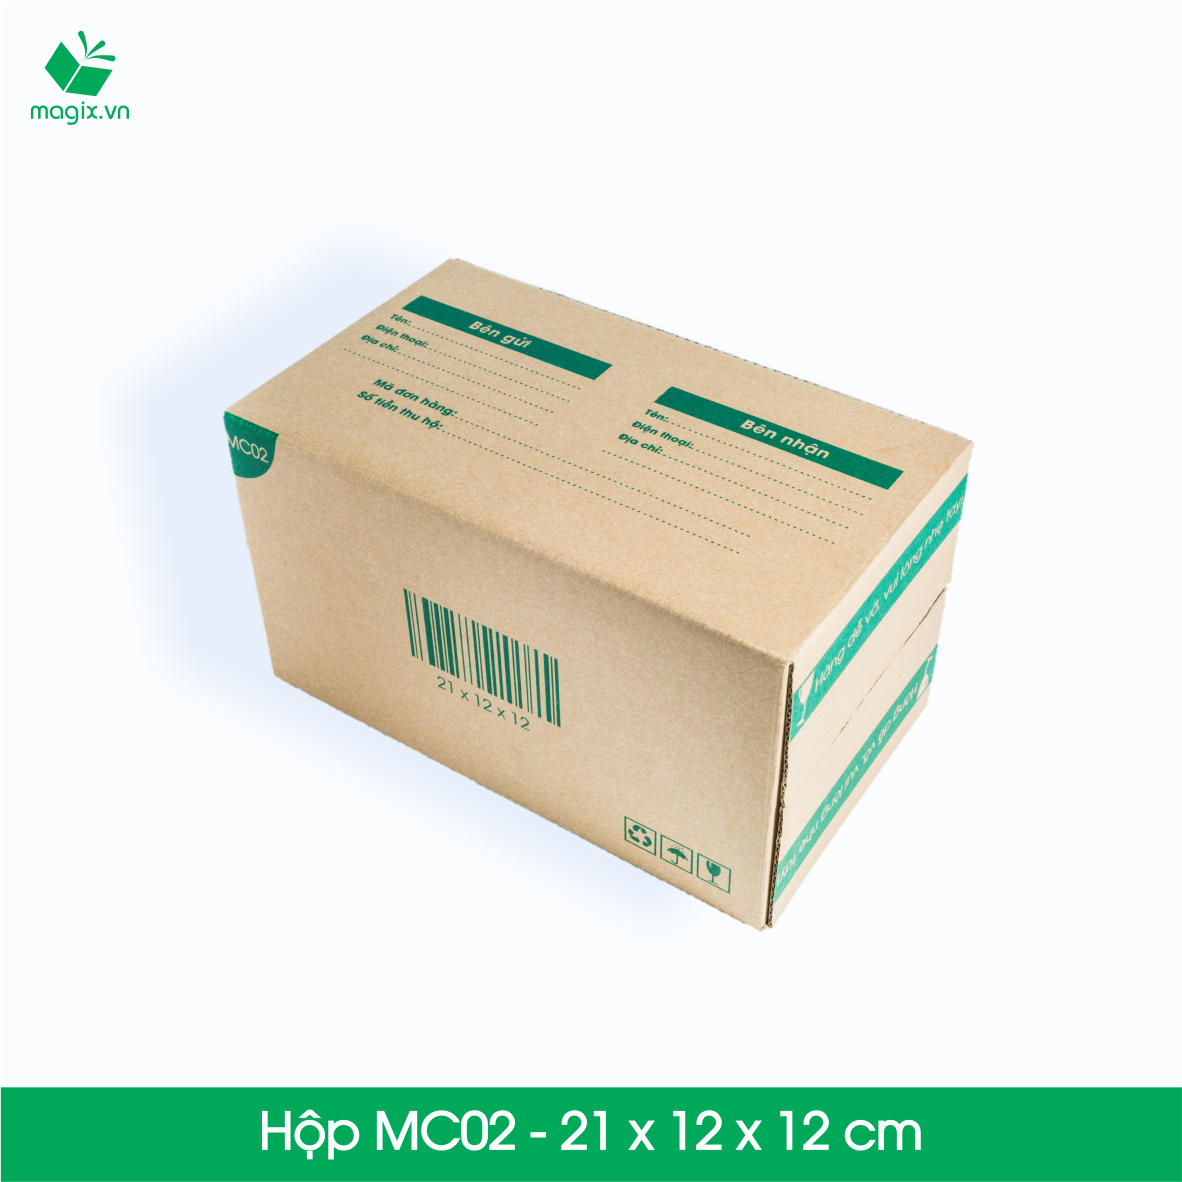 Magix chuyên cung cấp các mẫu hộp carton cao